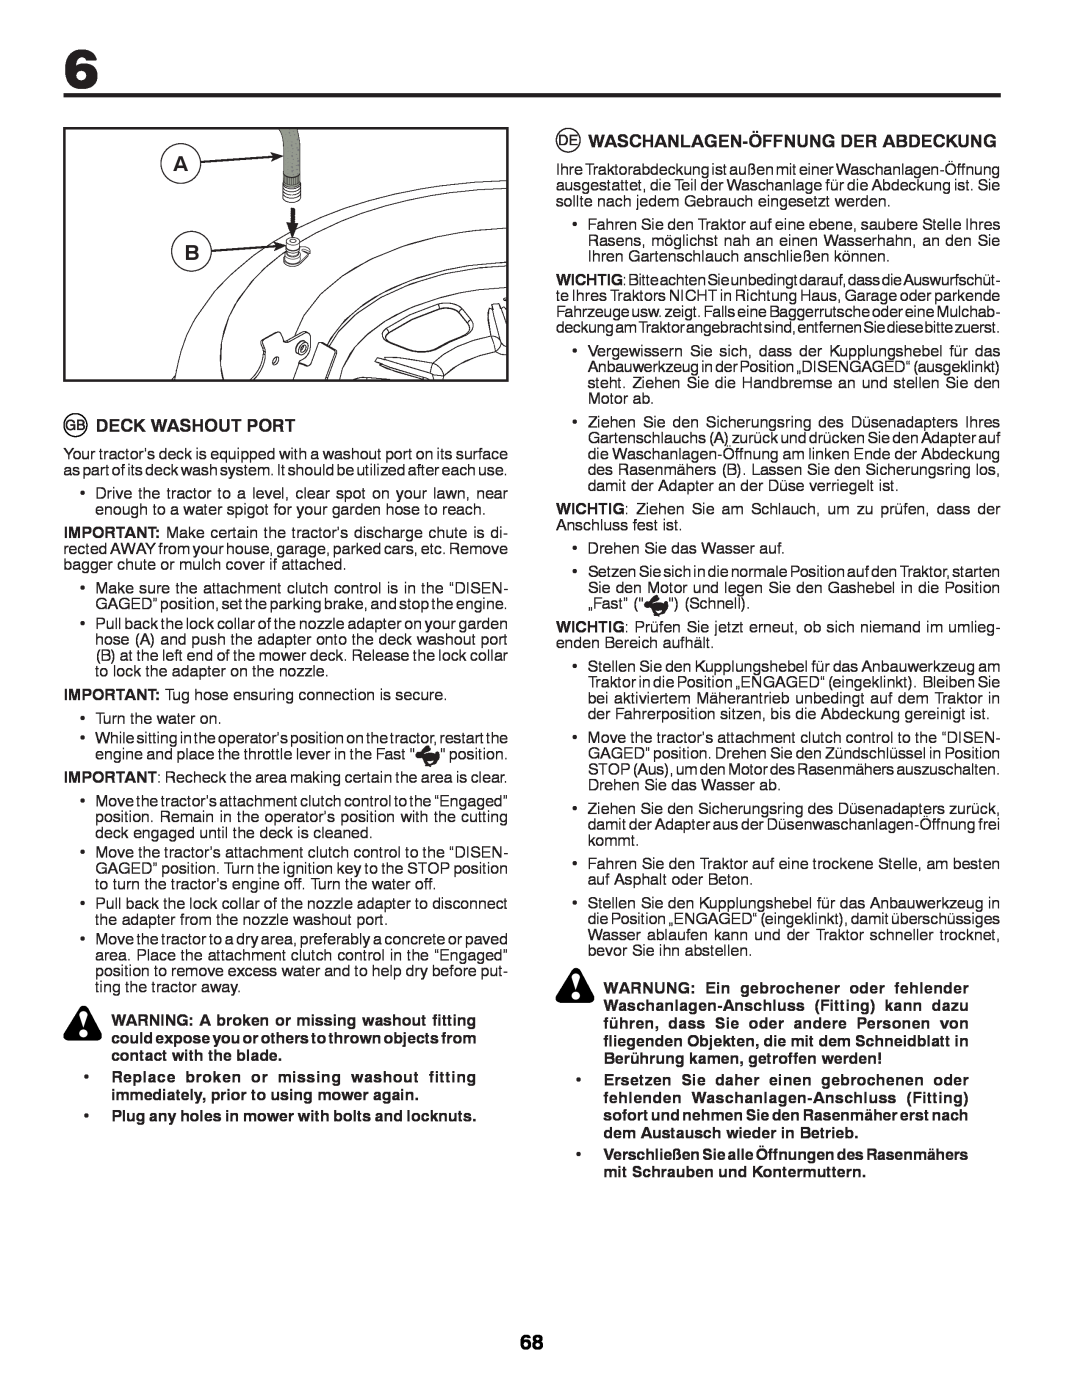 Partner Tech P11577 instruction manual Deck Washout Port, Waschanlagen-Öffnung Der Abdeckung 